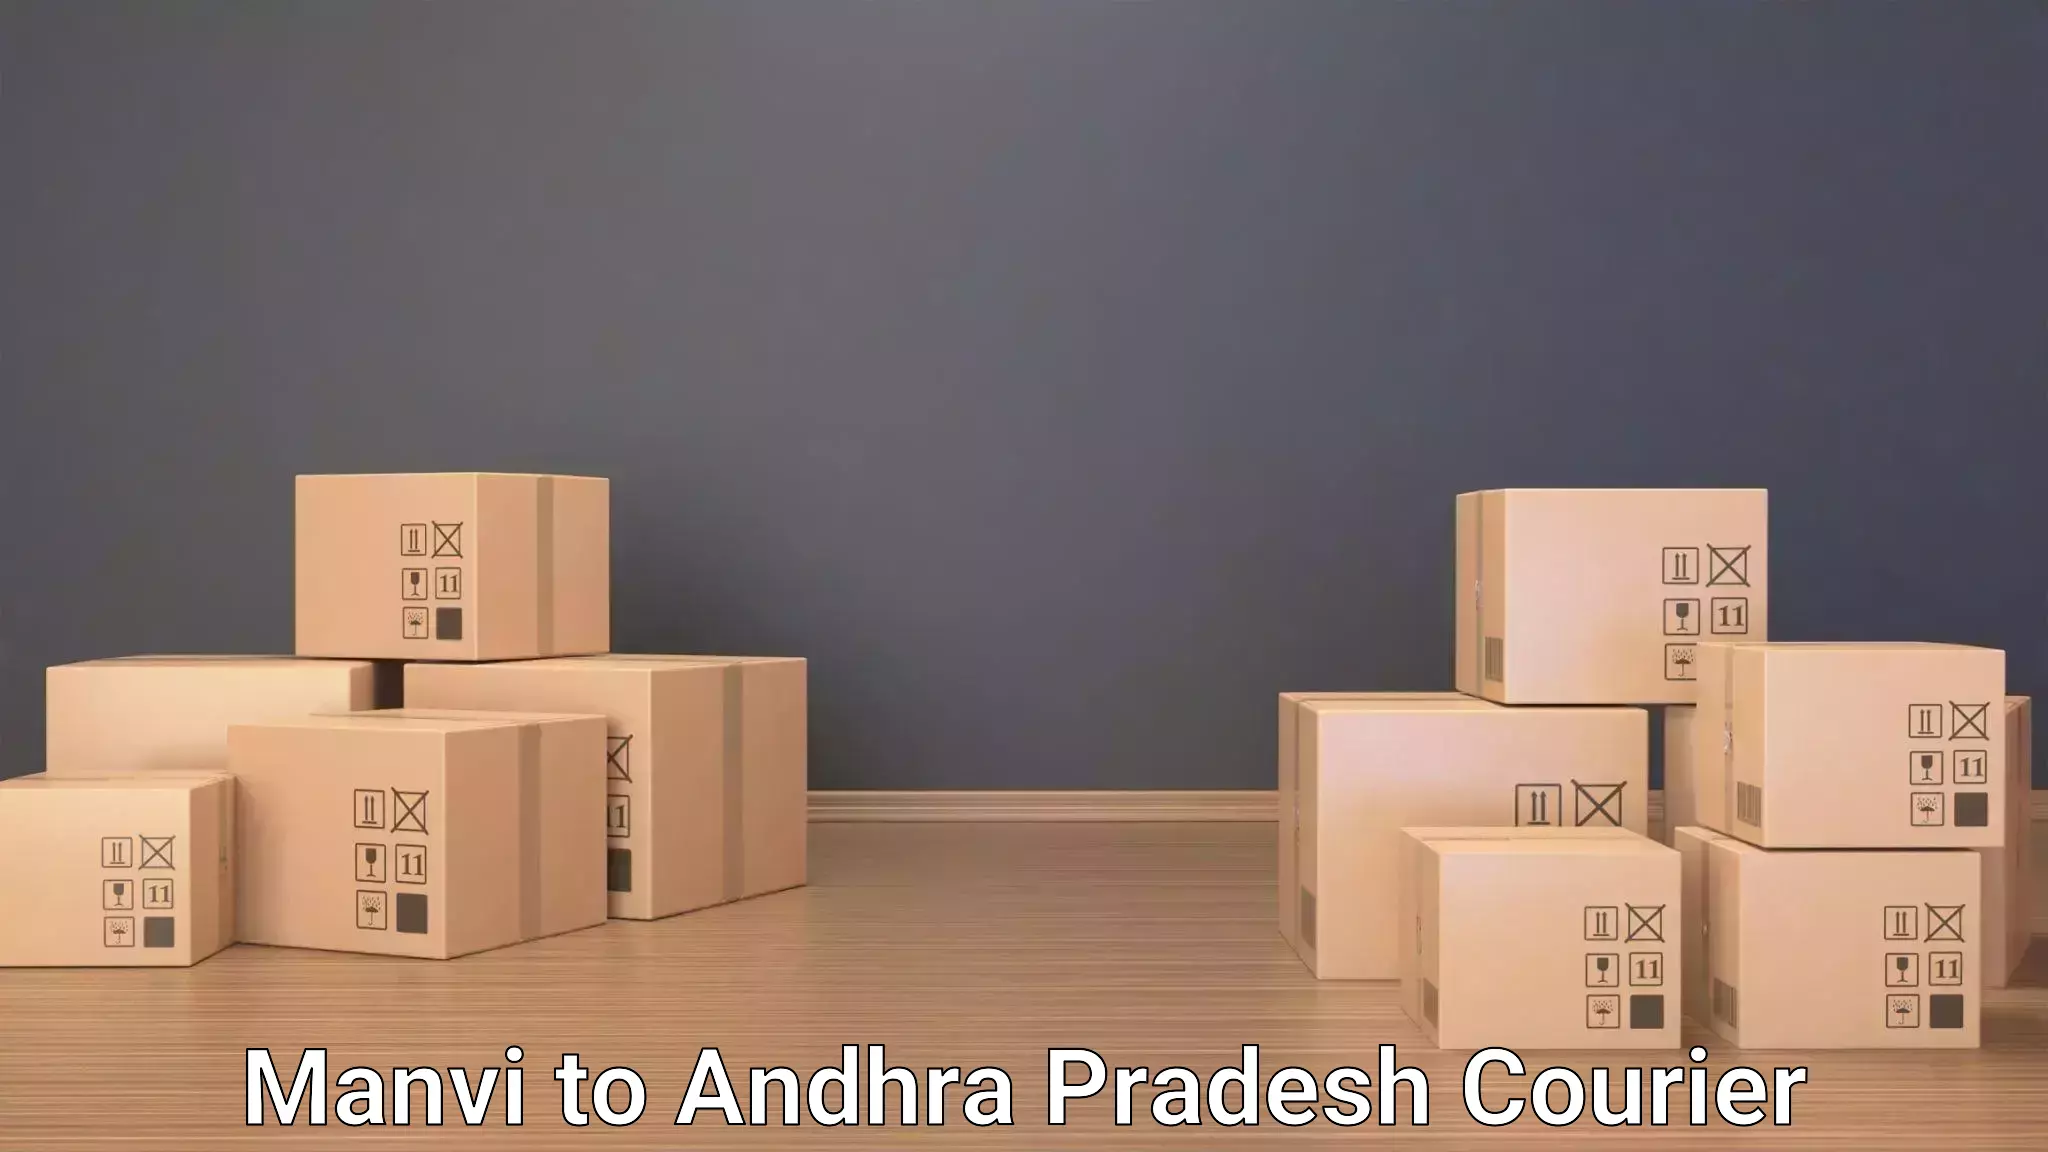 Luggage transfer service Manvi to Andhra Pradesh